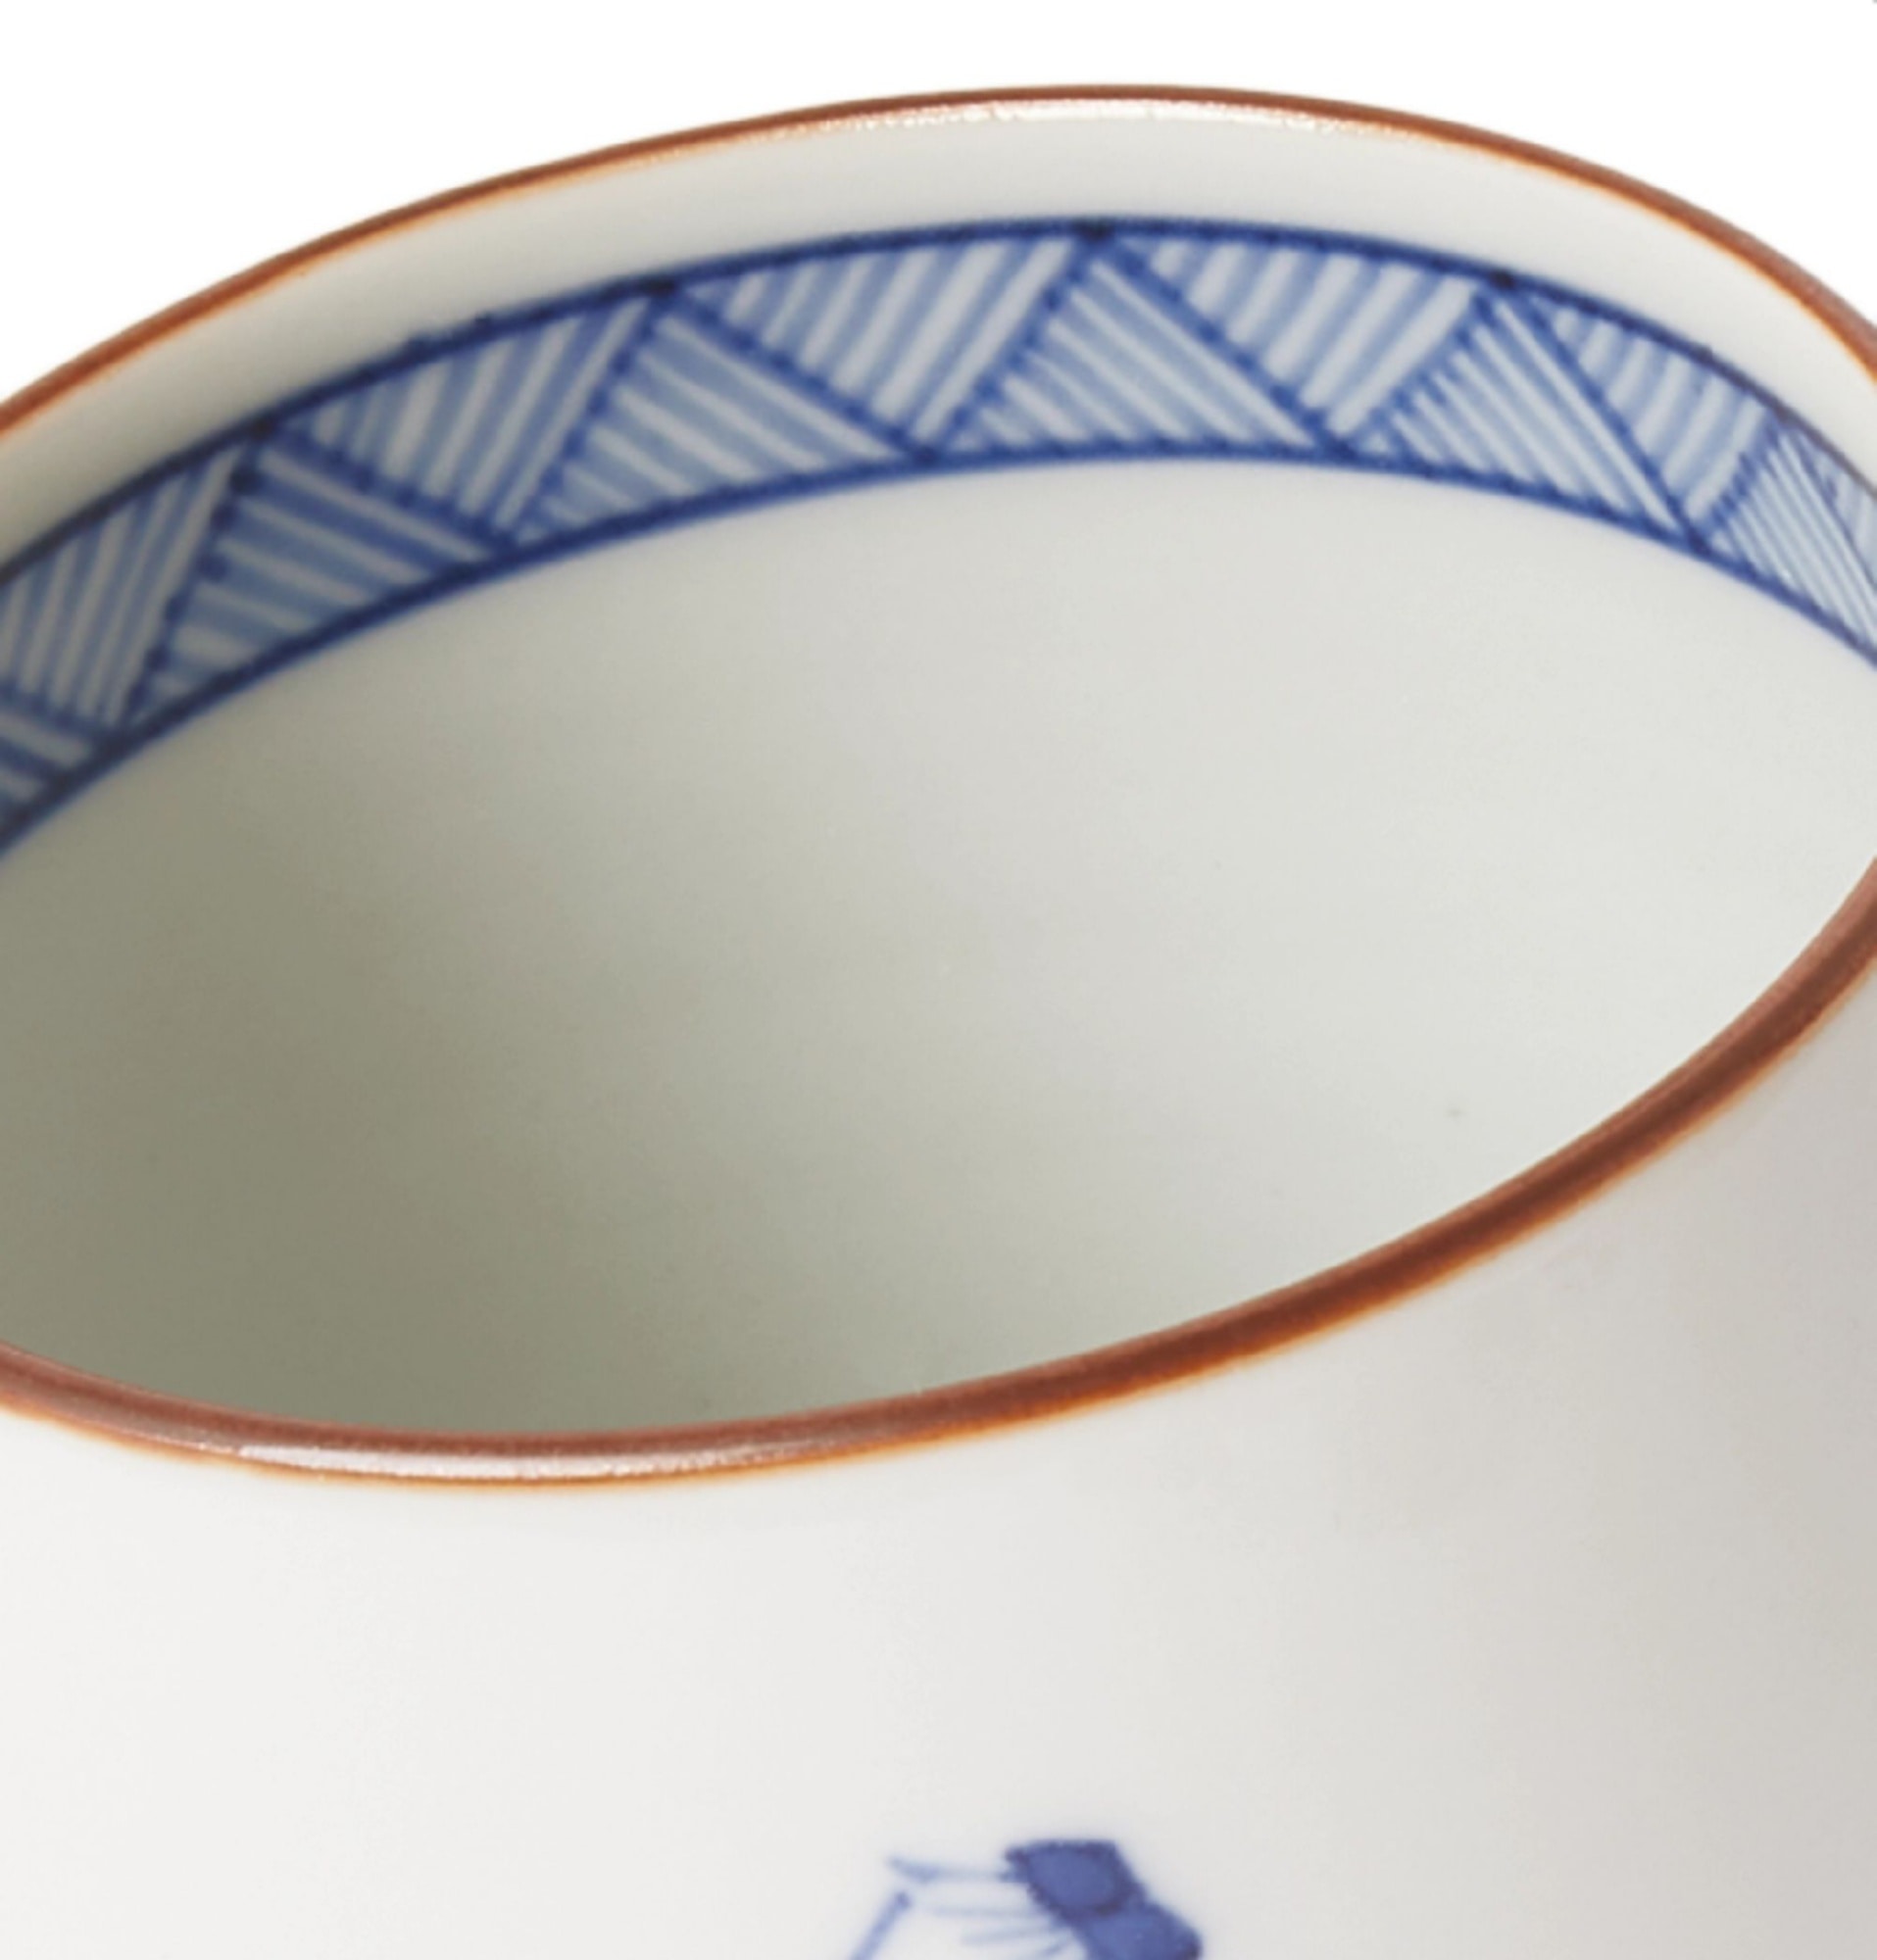 painted-porcelain-teacup-25458910981454421